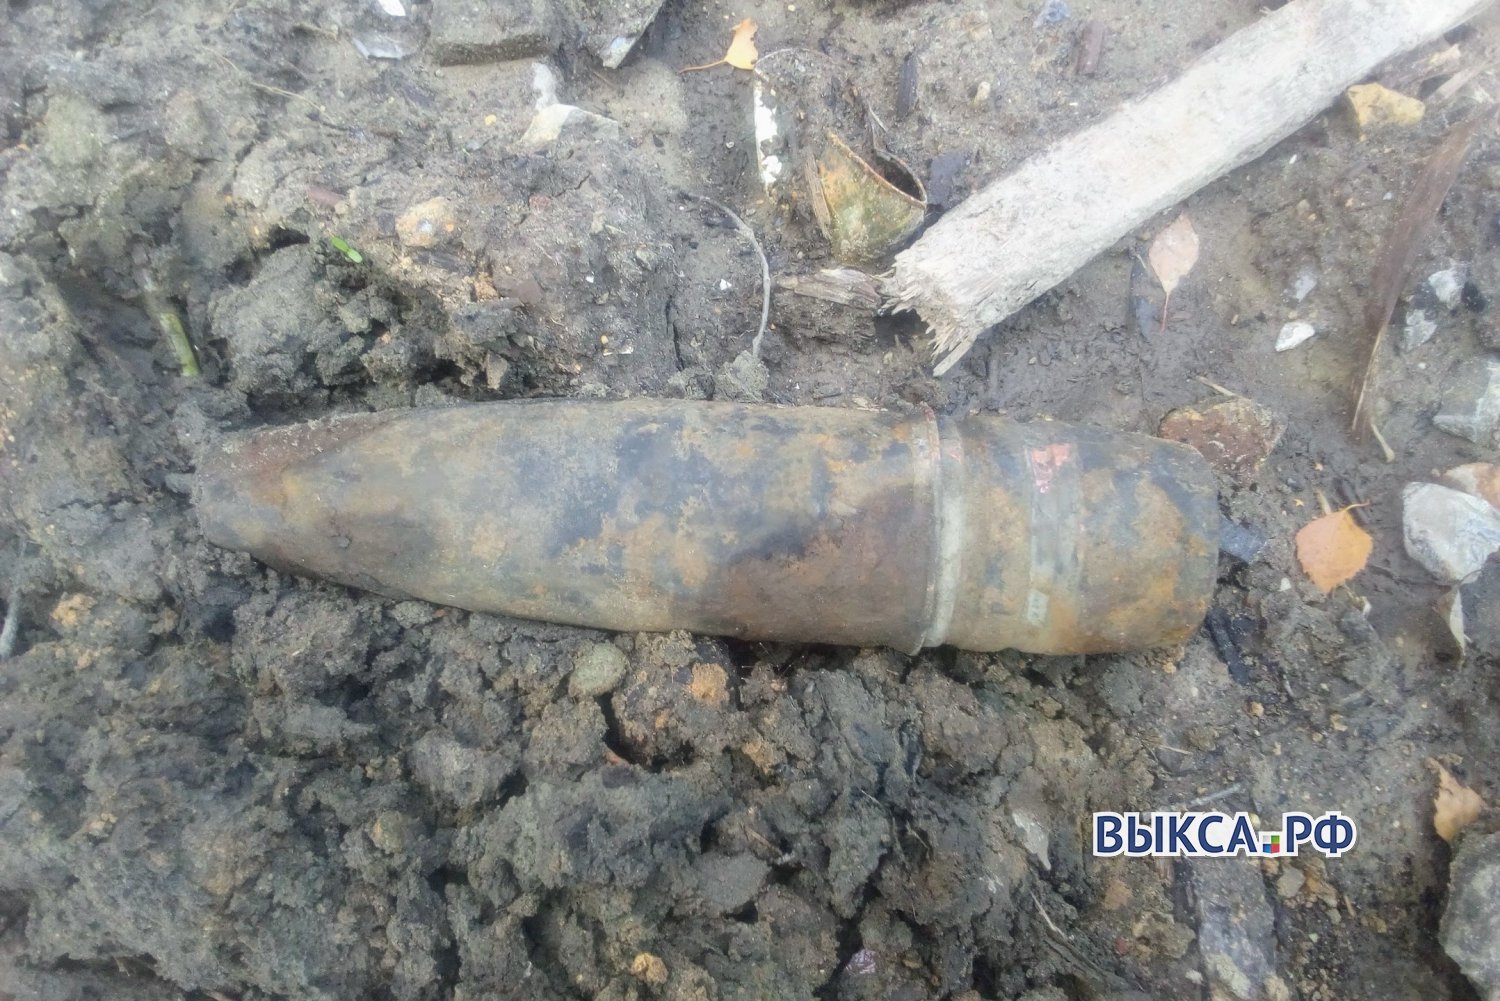 Снаряд в Антоповке оказался без взрывателя